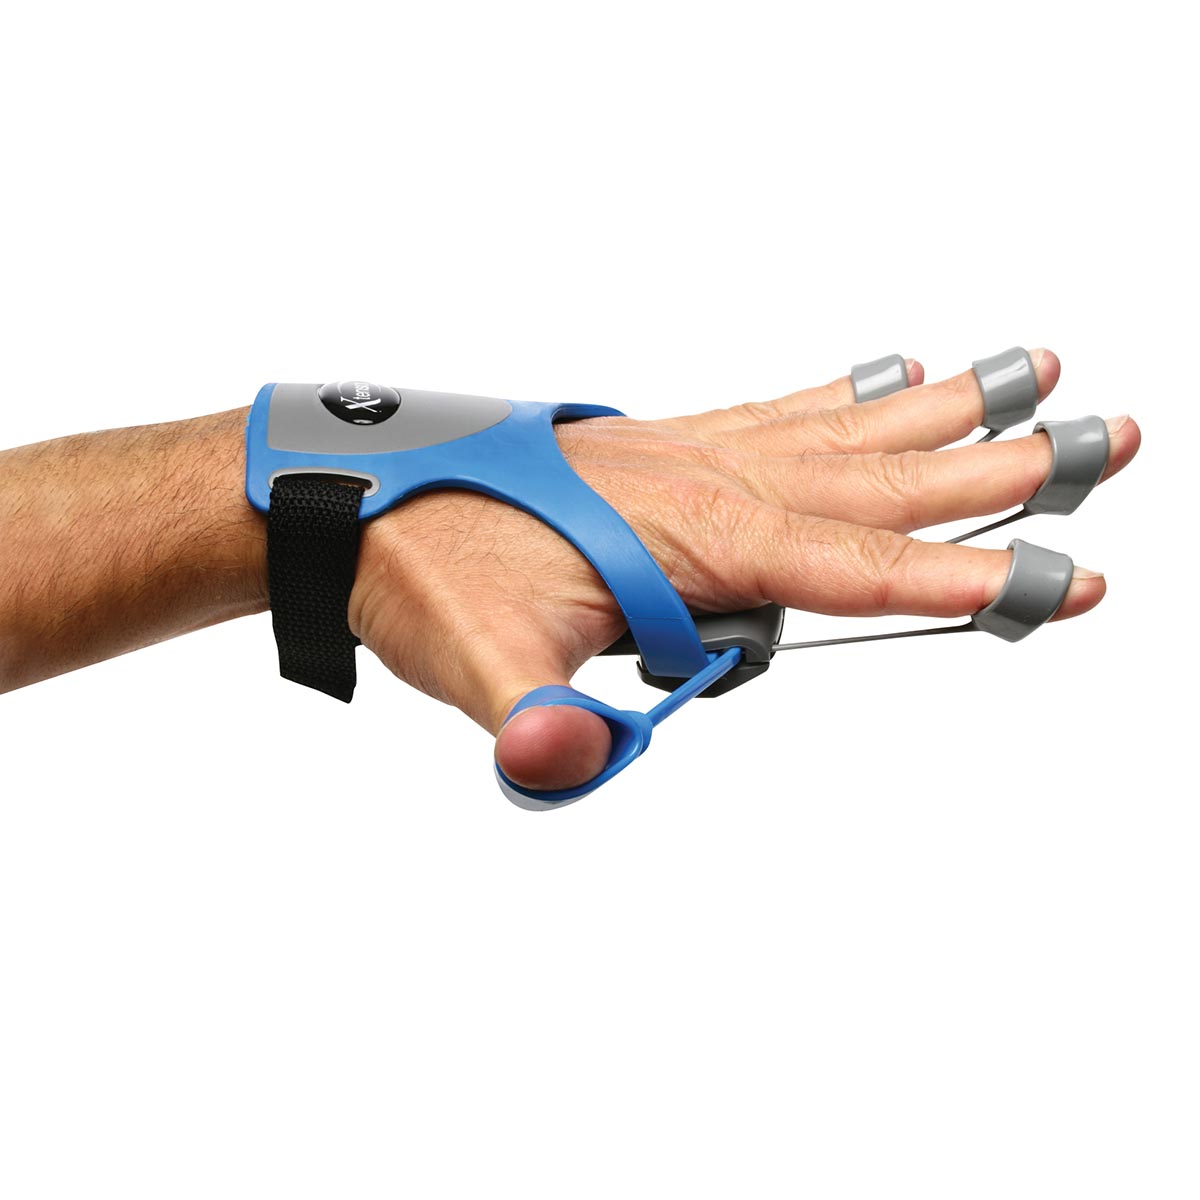 Ejercitador de mano Xtensor azul - 1019466 - W58360B - 10-0960B -  Entrenamiento de la mano - 3B Scientific